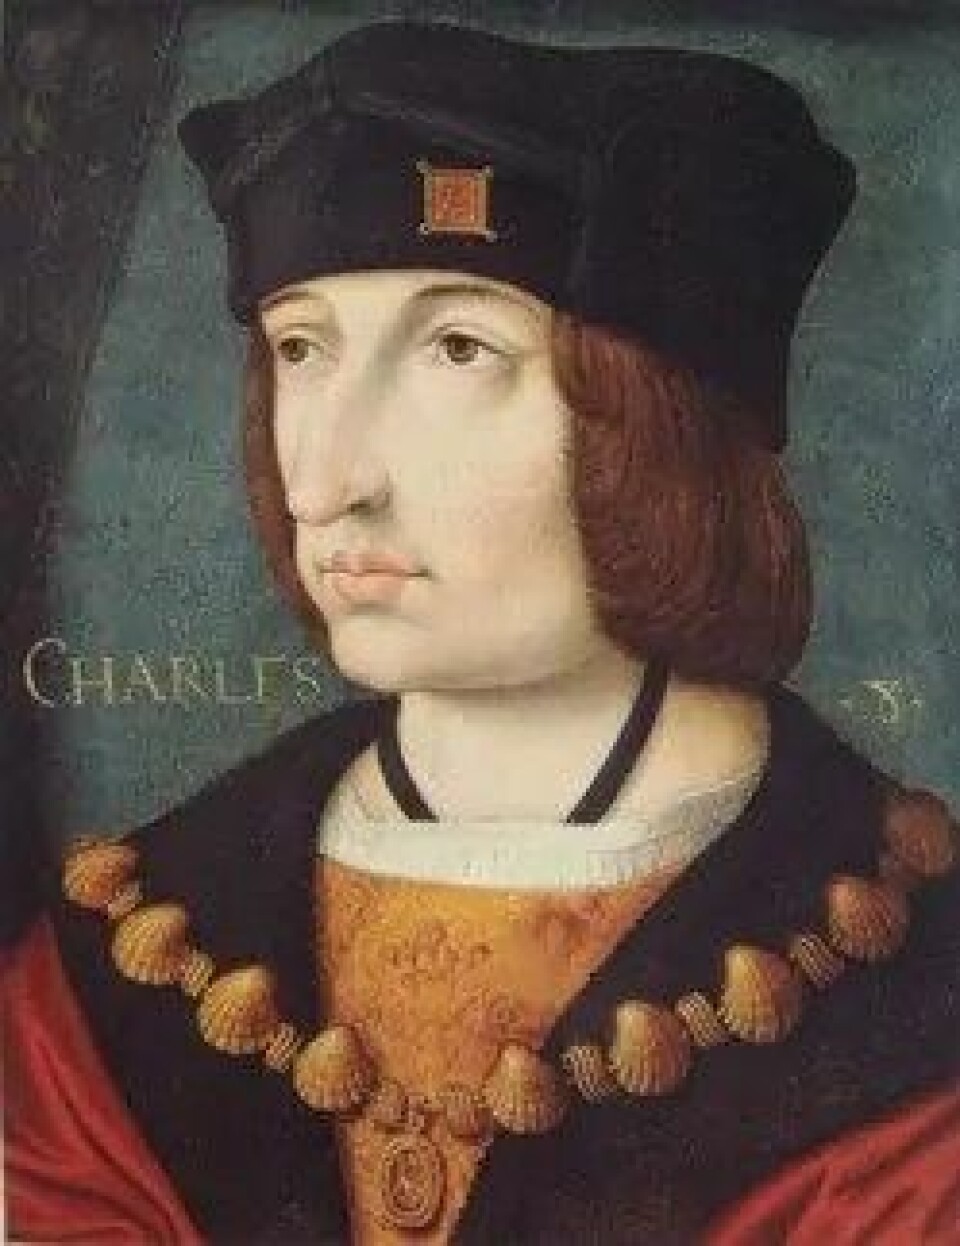 Franske kong Charles VIII bidro til Picos frigivelse etter at han ble anklaget for kjetteri. (Kilde: Wikimedia Commons CC0 1.0)